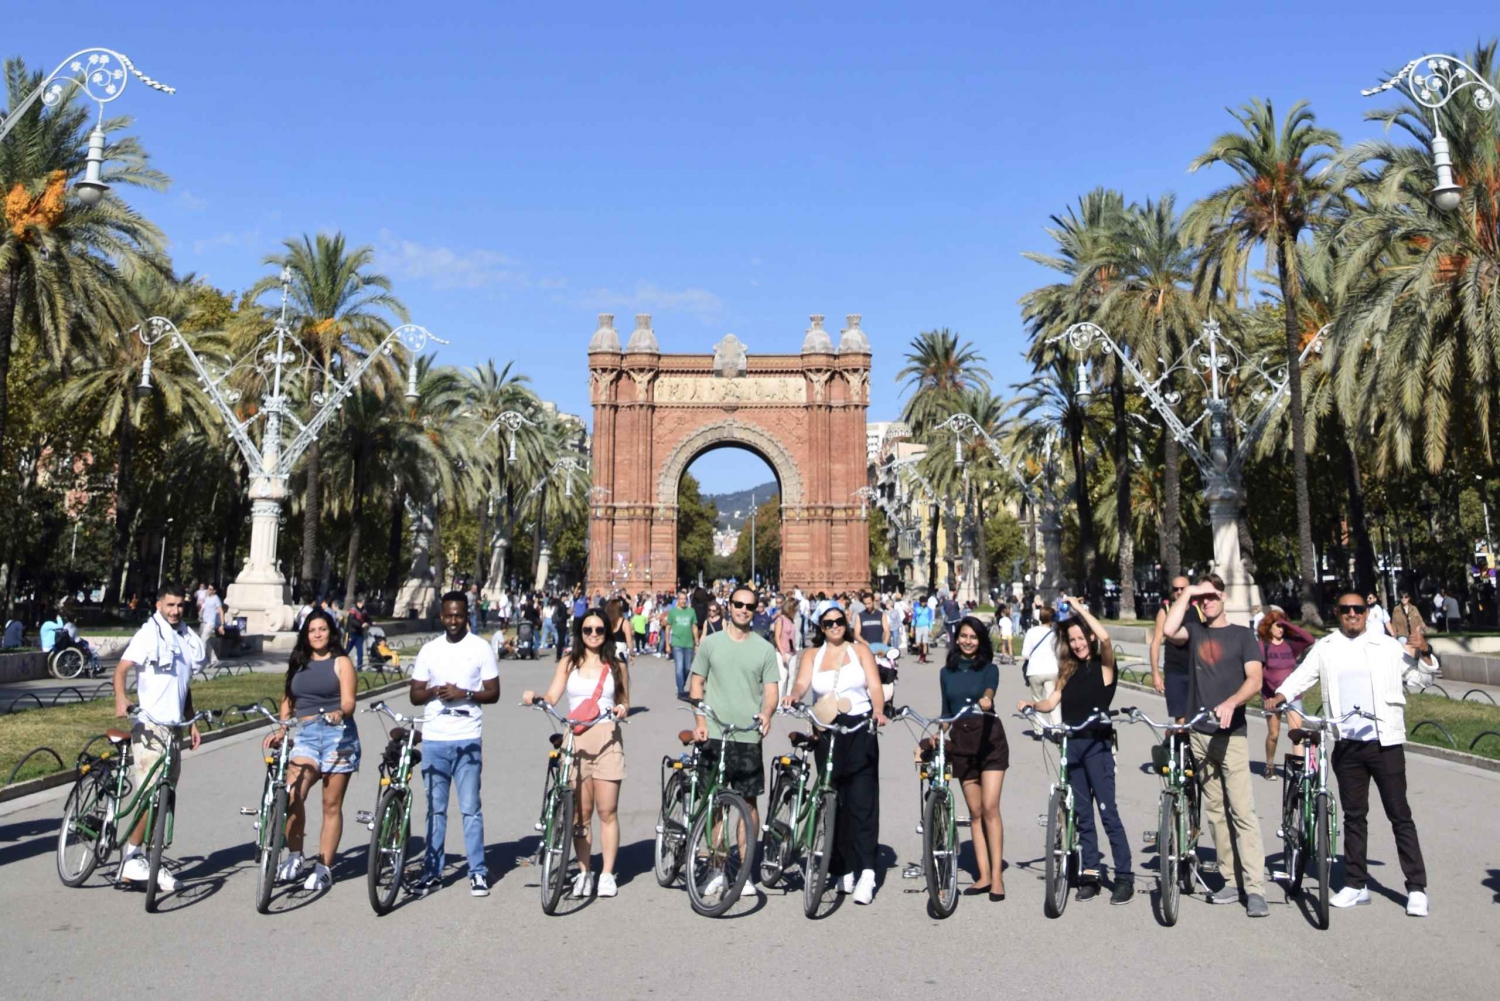 Explora Barcelona en bici y haz fotos